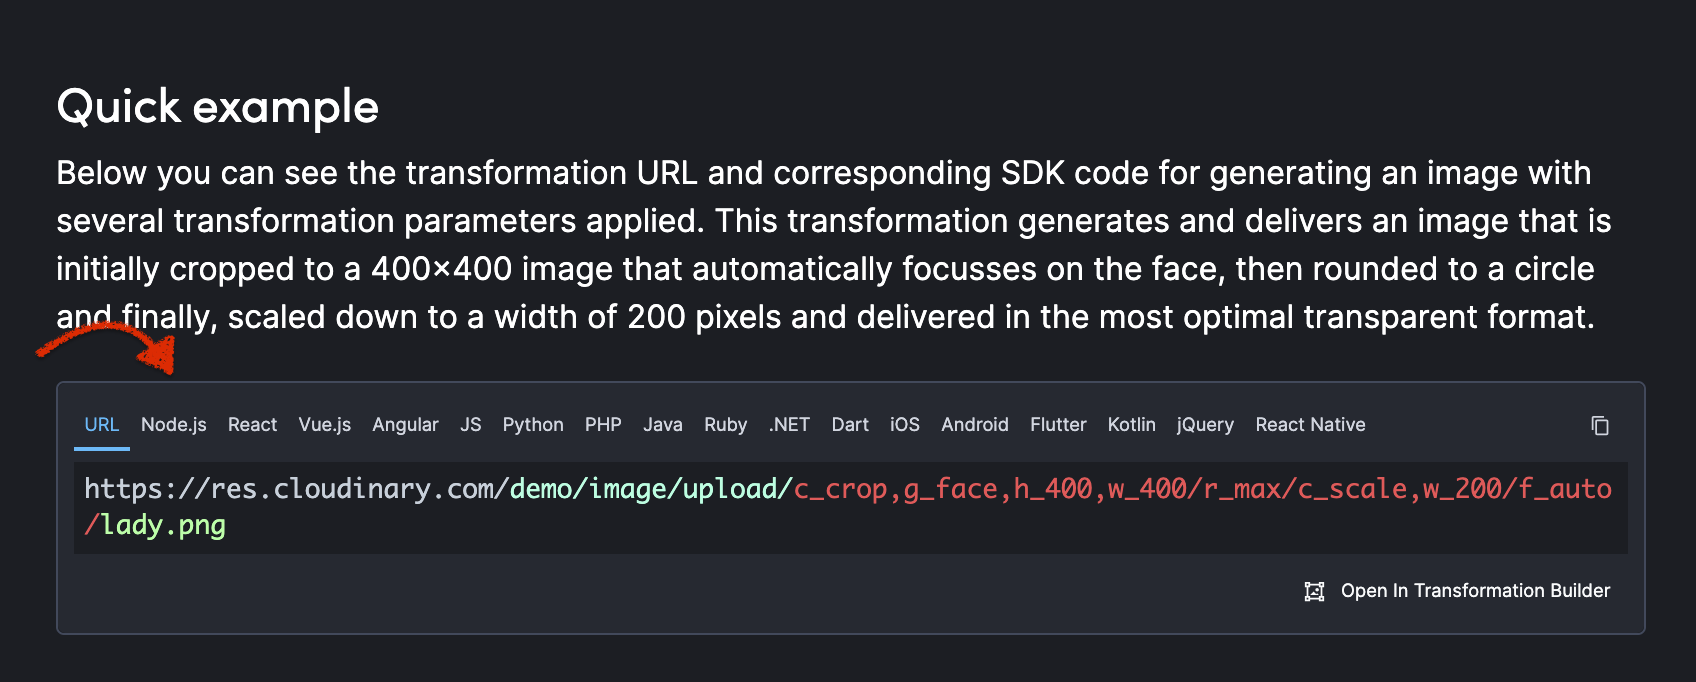 Cloudinary API documentation code example